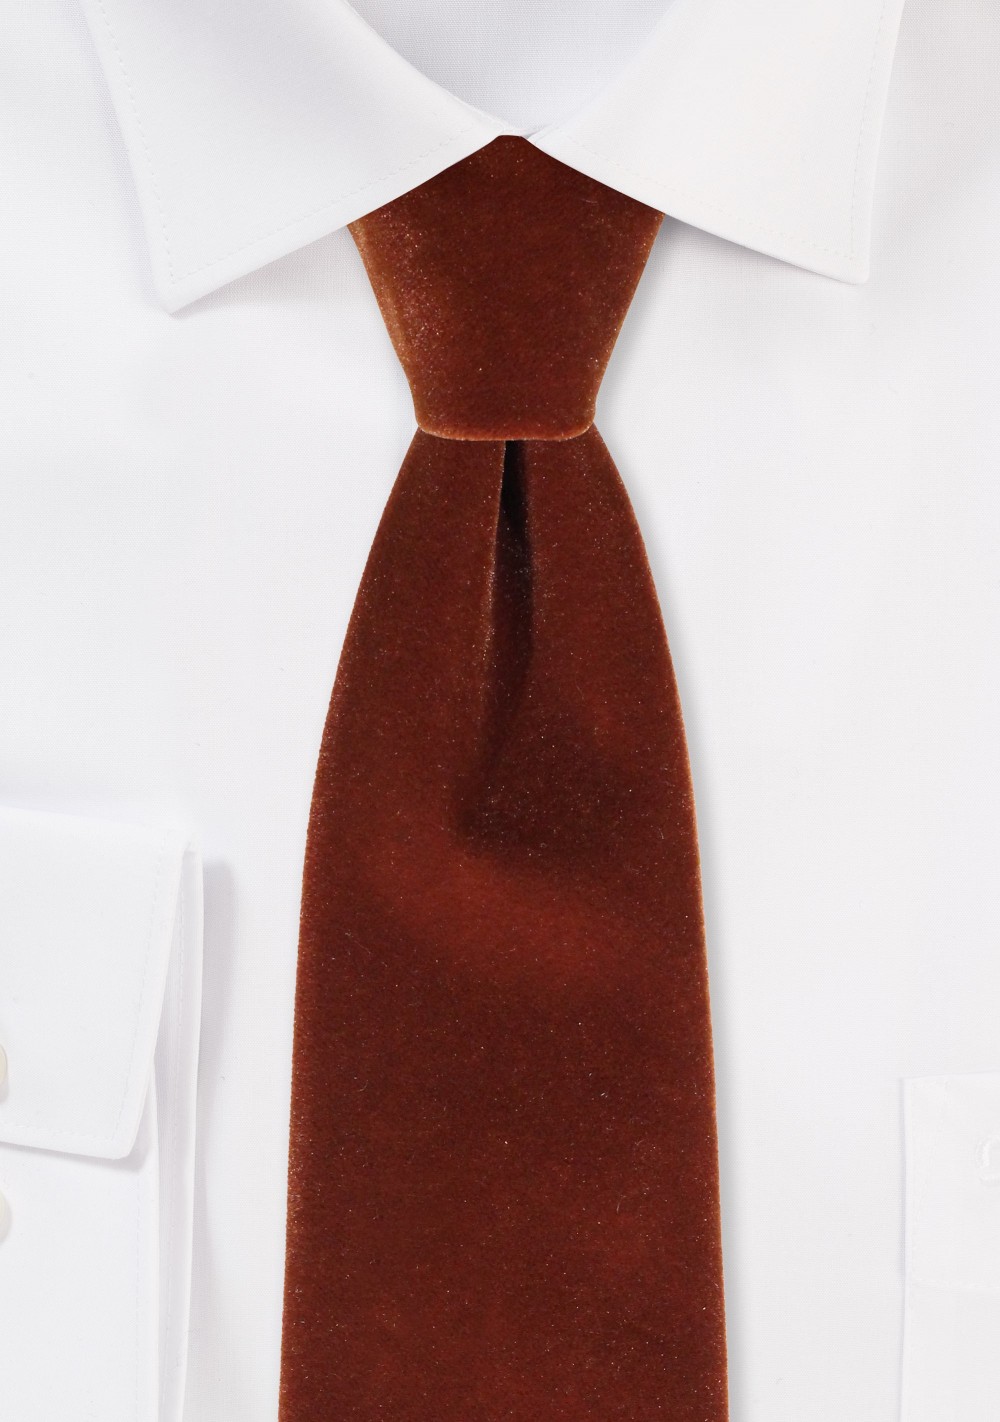 Luxe Velvet Necktie in Mocha Brown